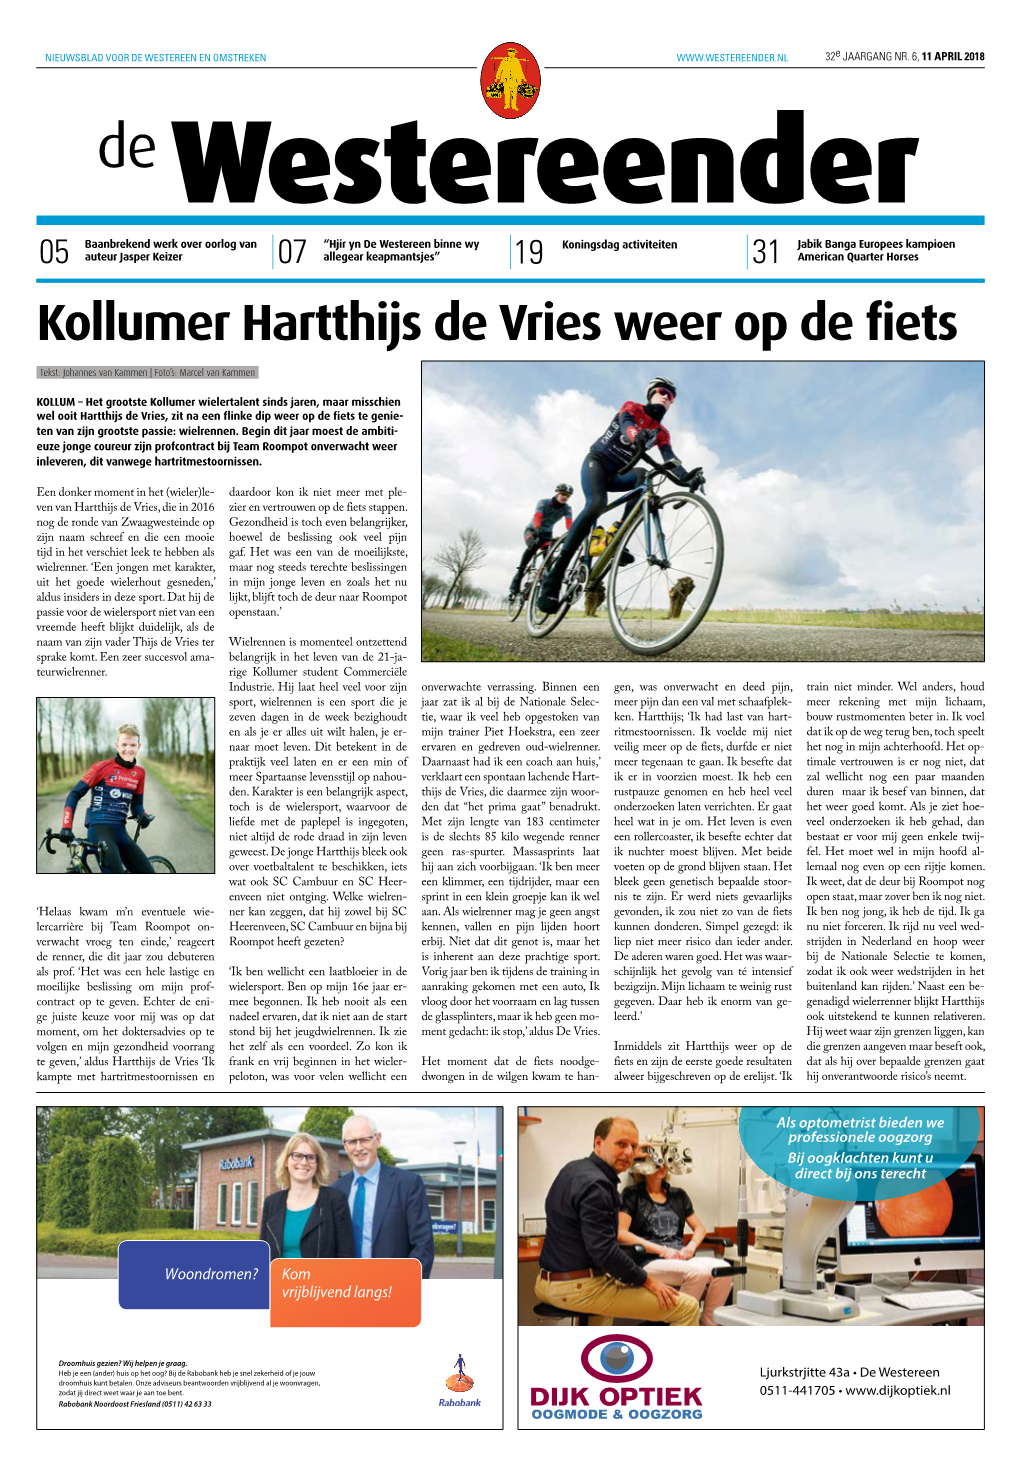 Kollumer Hartthijs De Vries Weer Op De Fiets